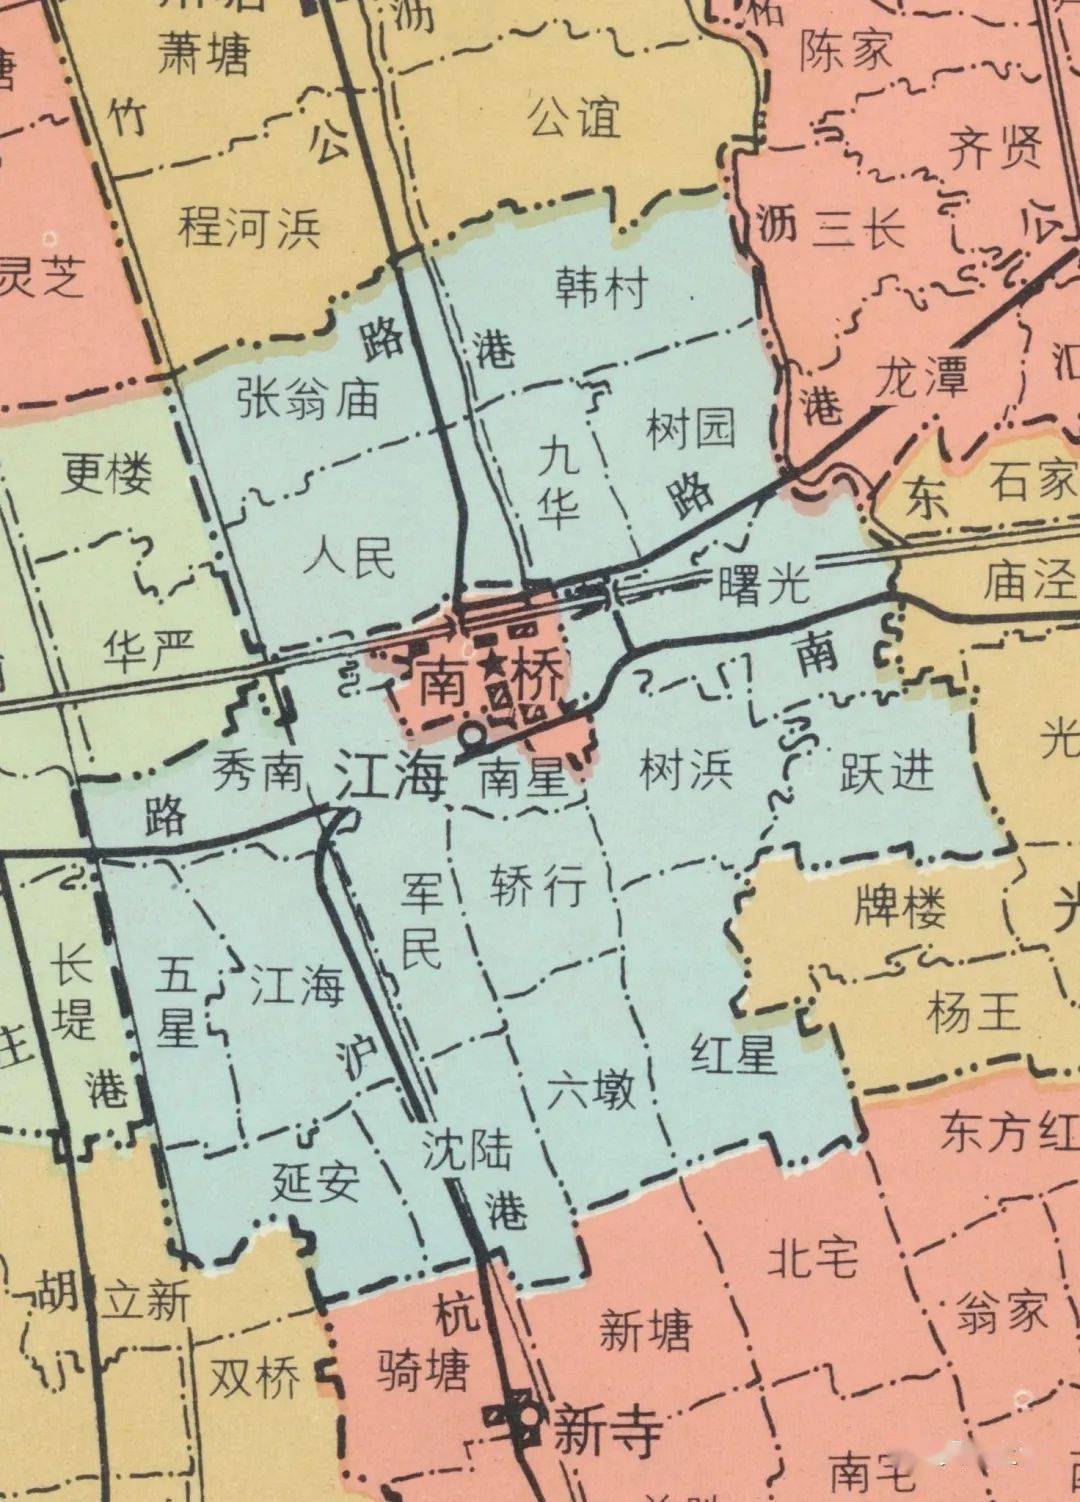 1986年《奉贤县行政区划图》中江海乡位置示意图 江海镇位于奉贤区